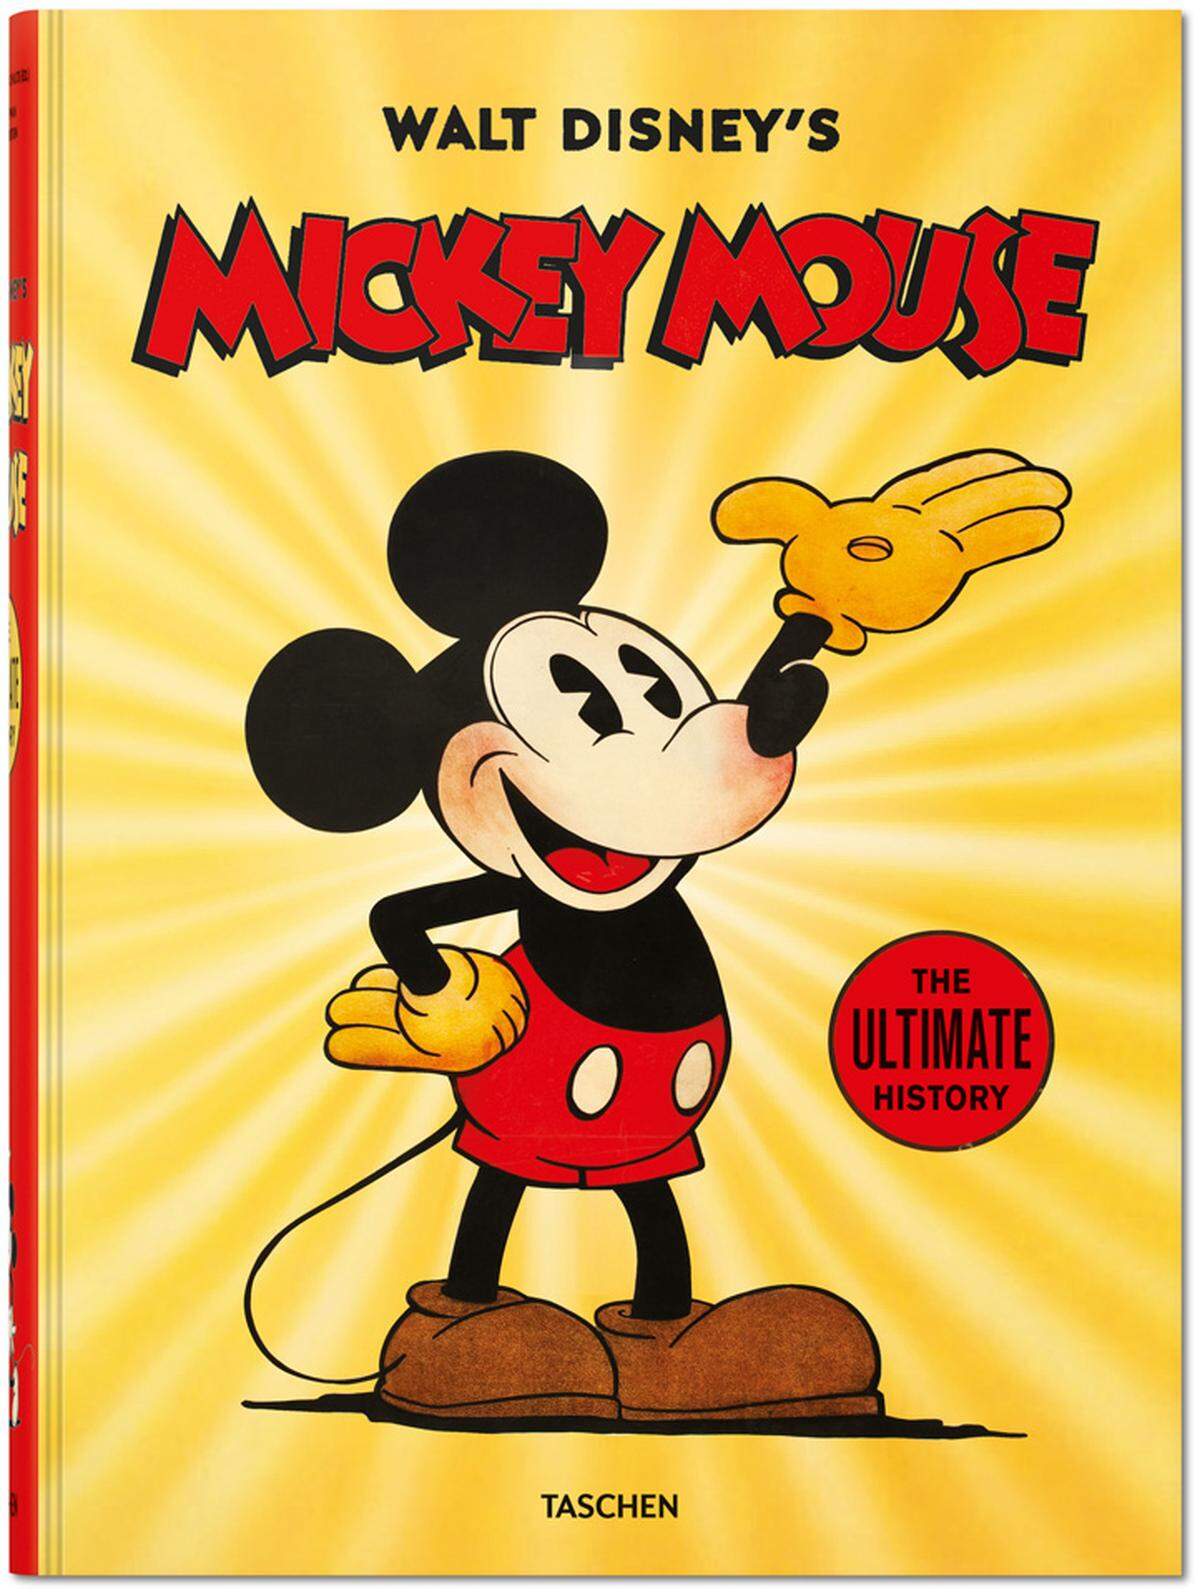 Der Taschen Verlag, der sich ansonsten mit Bildbänden zu namhaften Künstlern Ruhm erwirbt, hat zum Geburtstag „Walt Disney's Mickey Mouse: Die ultimative Chronik“ herausgebracht: 500 Seiten (mit Leseband!) um 150 Euro. Es gibt bis jetzt keinen Band, der sich mit mehr Hingabe Disneys unendlichem Universum widmet.